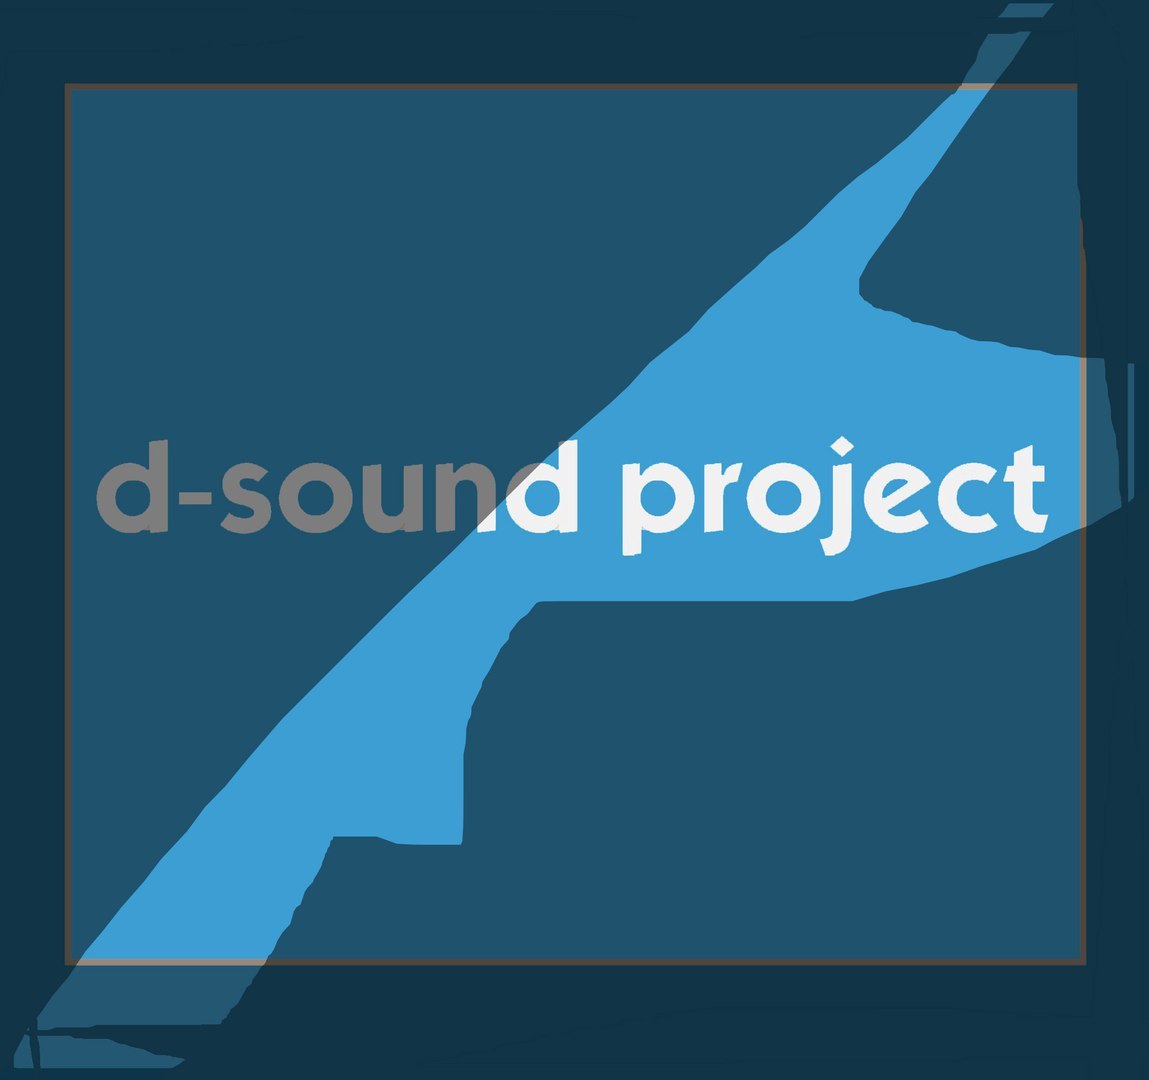 Project “d-sound”